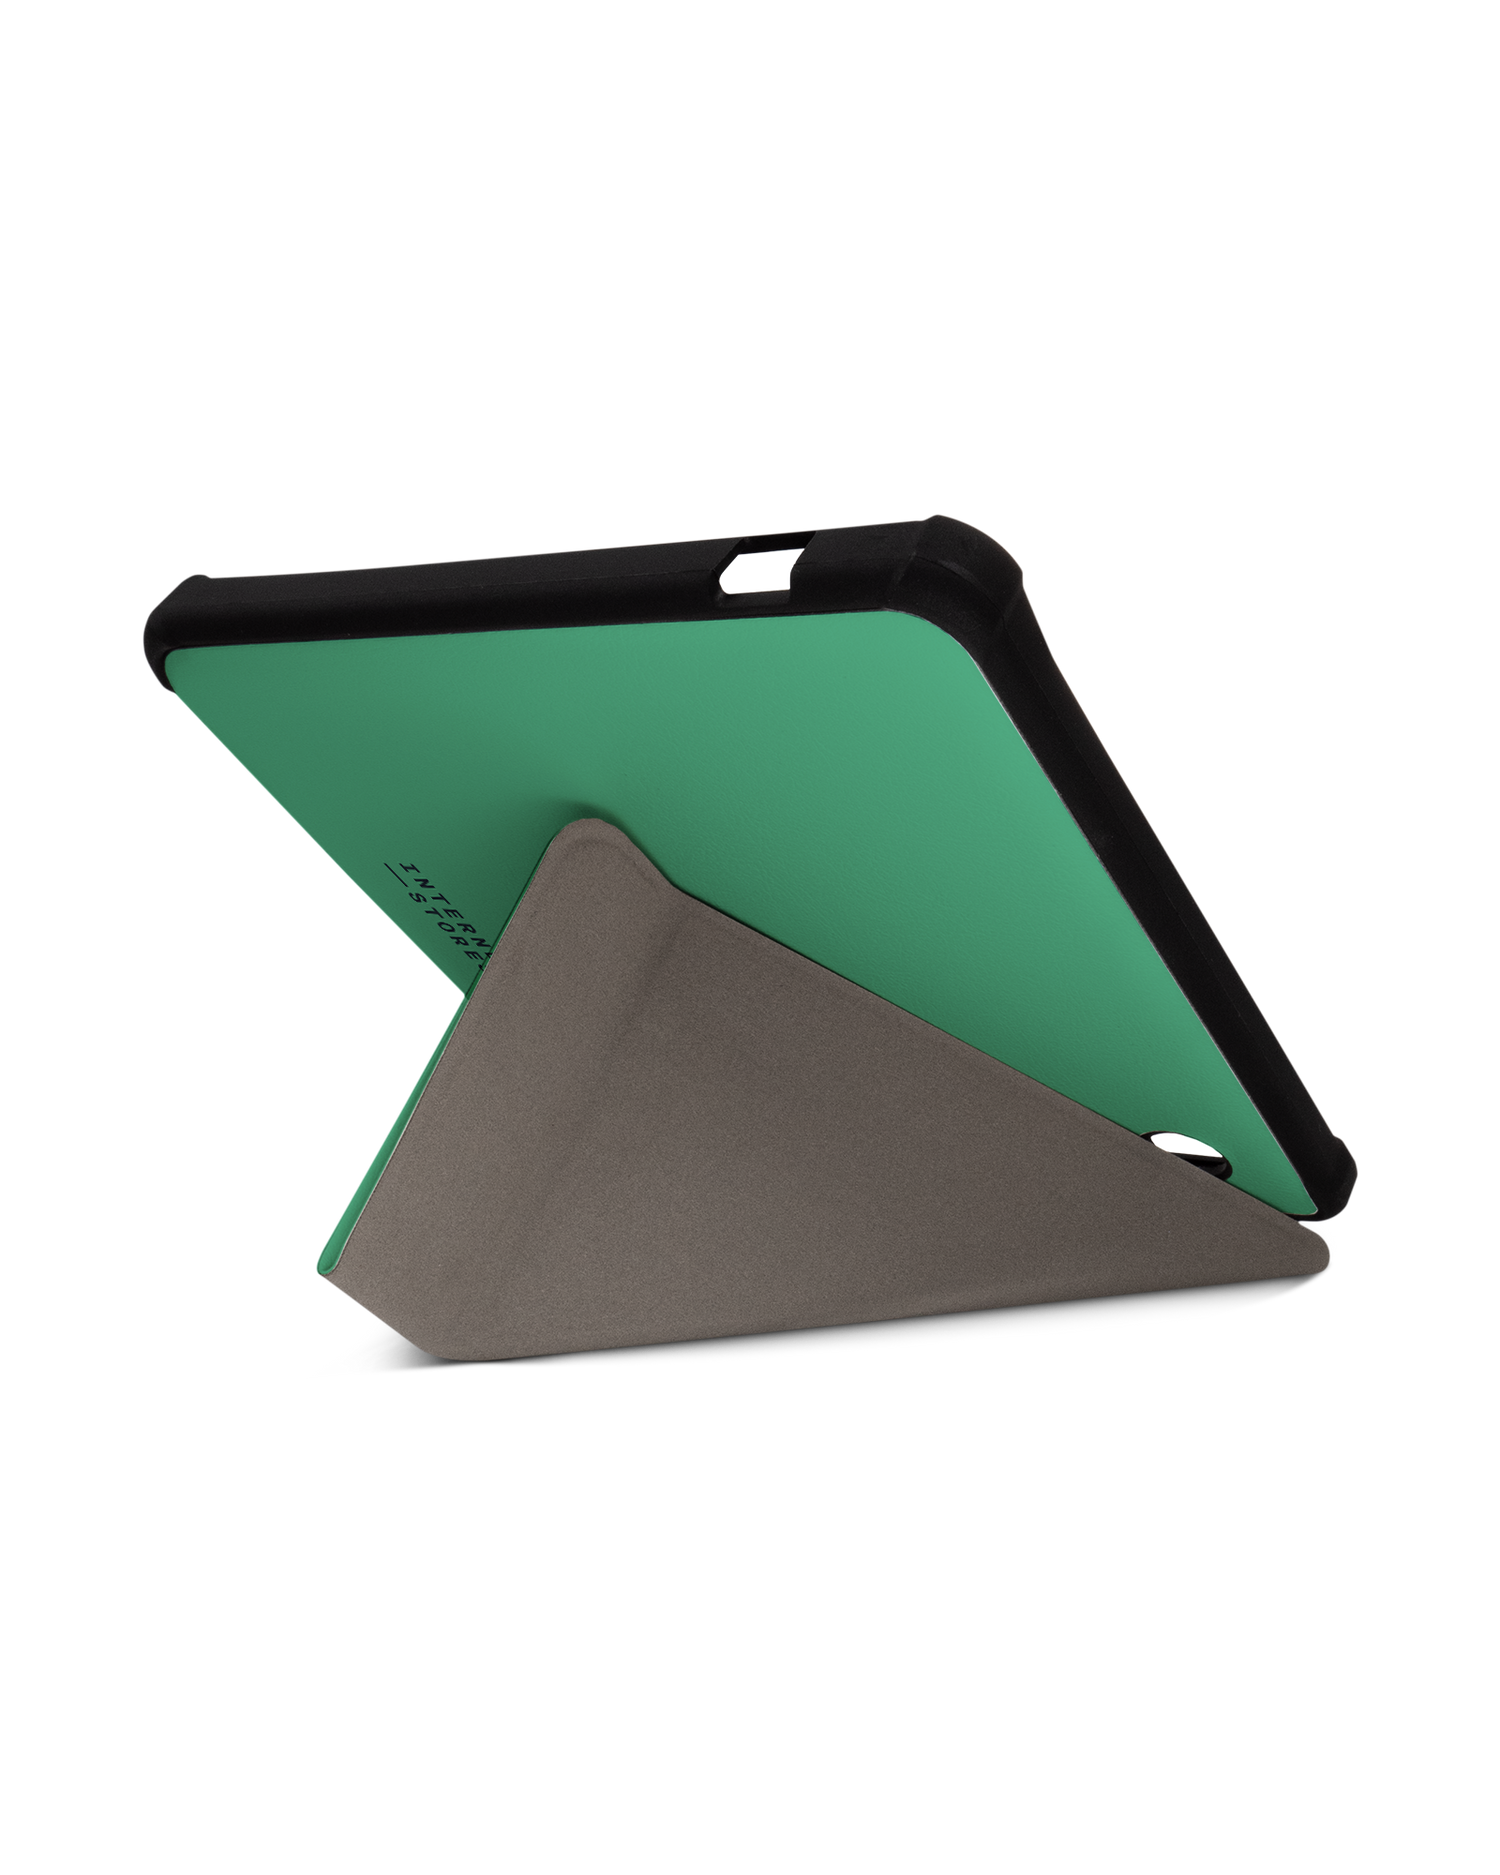 ISG Neon Green eBook-Reader Smart Case für tolino vision 5 (2019): Aufgestellt im Querformat